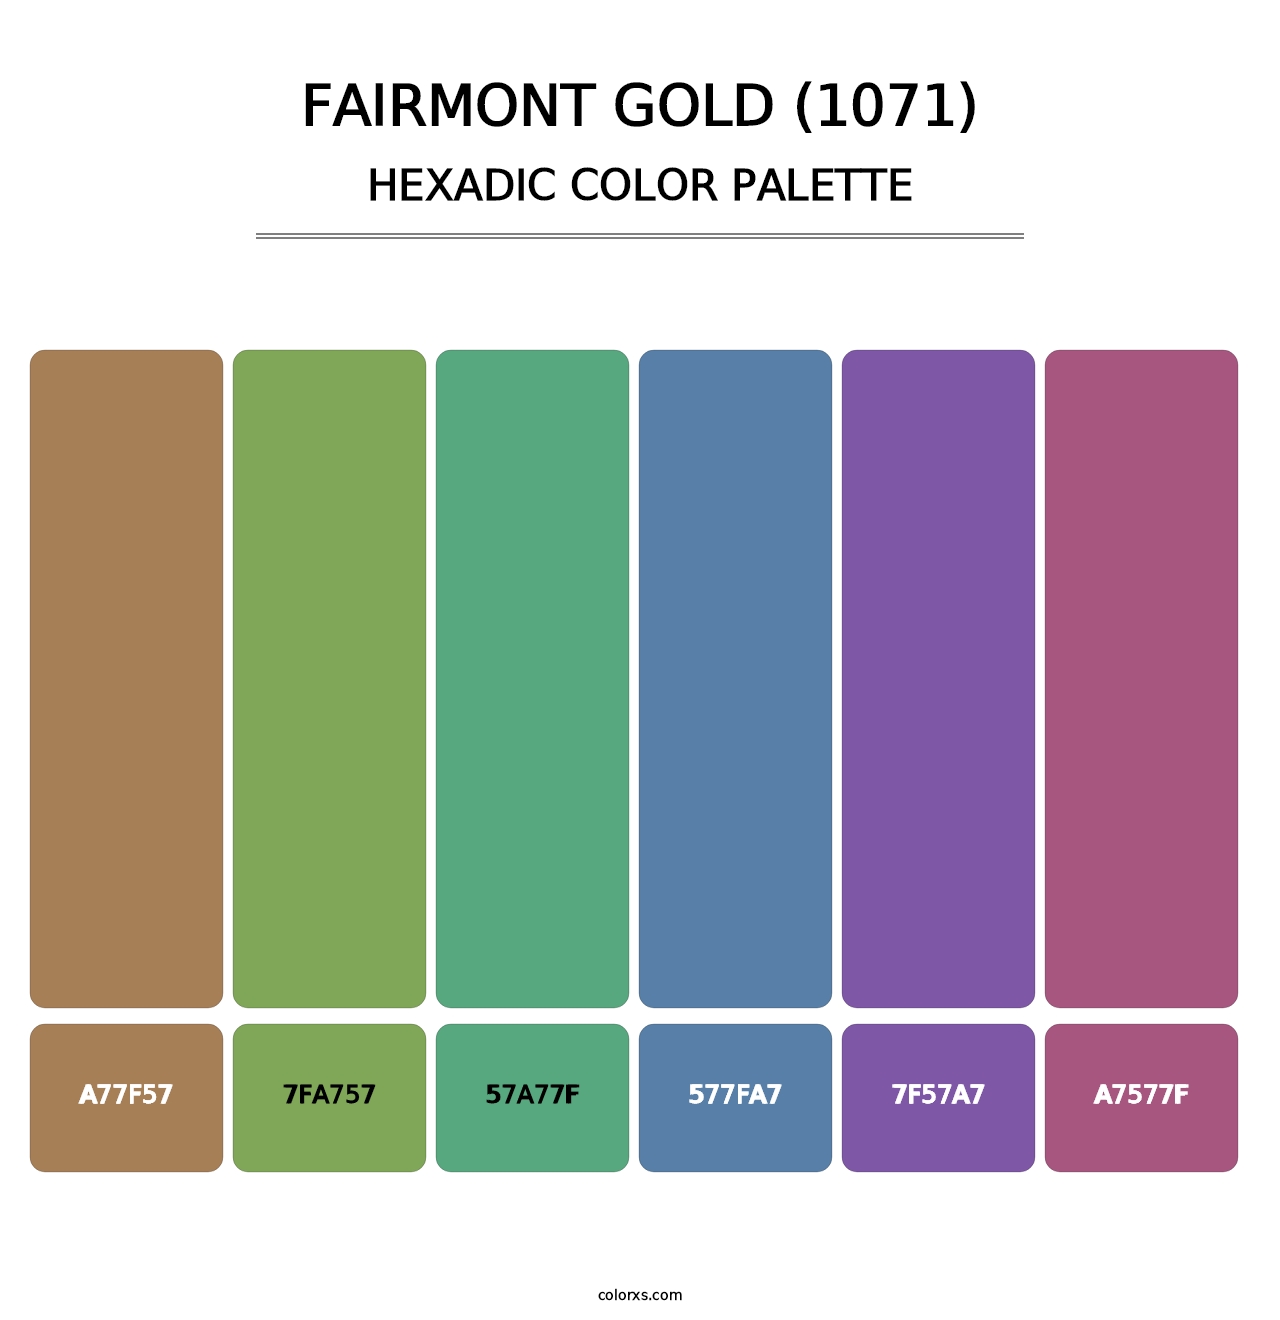 Fairmont Gold (1071) - Hexadic Color Palette